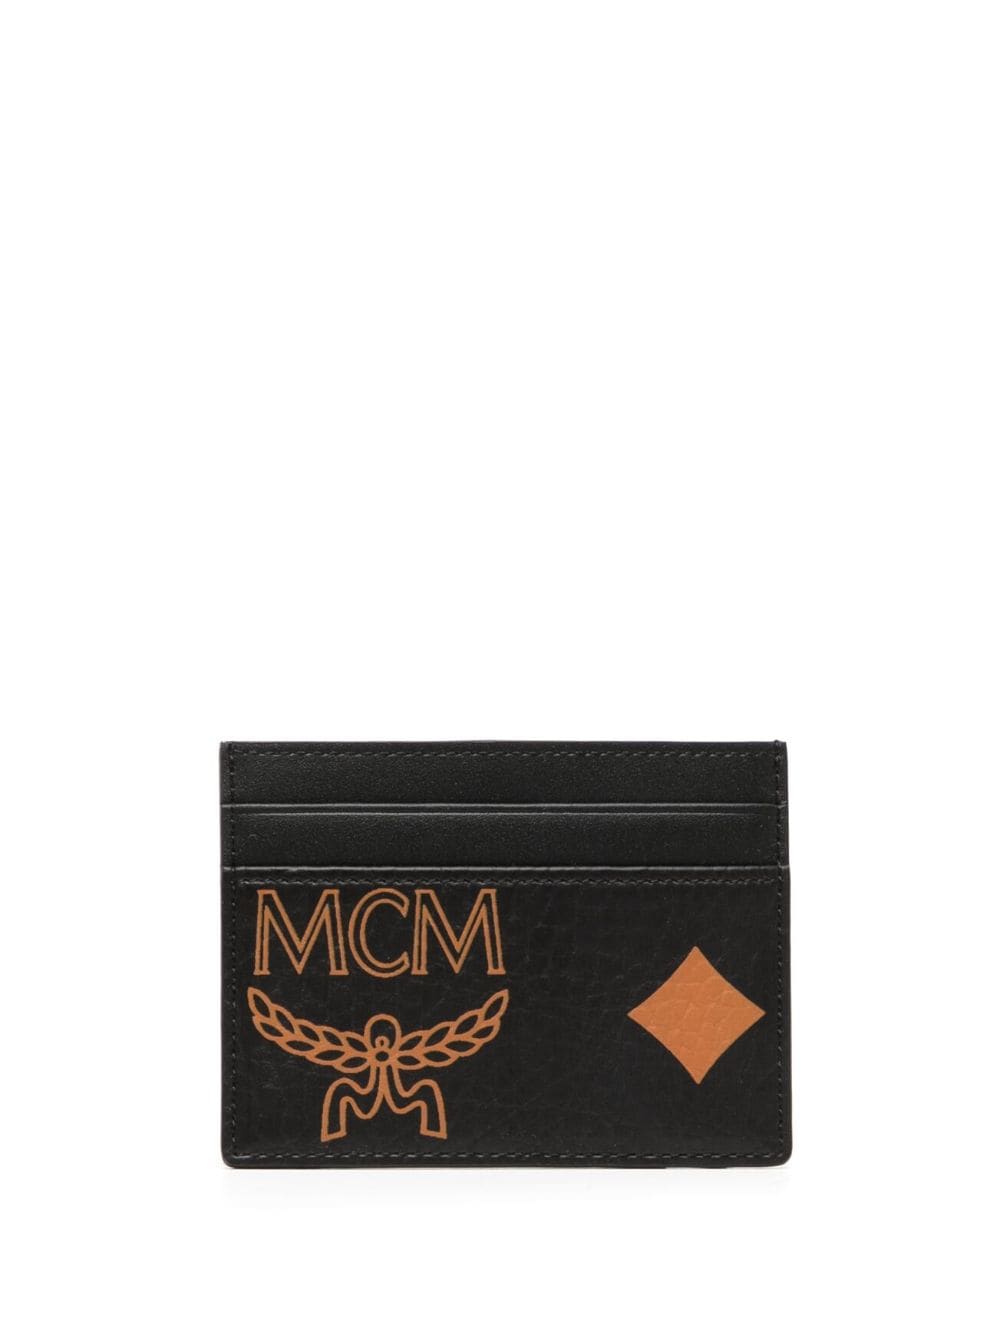 MCM Aren Kartenetui mit Maxi-Monogramm - Schwarz von MCM